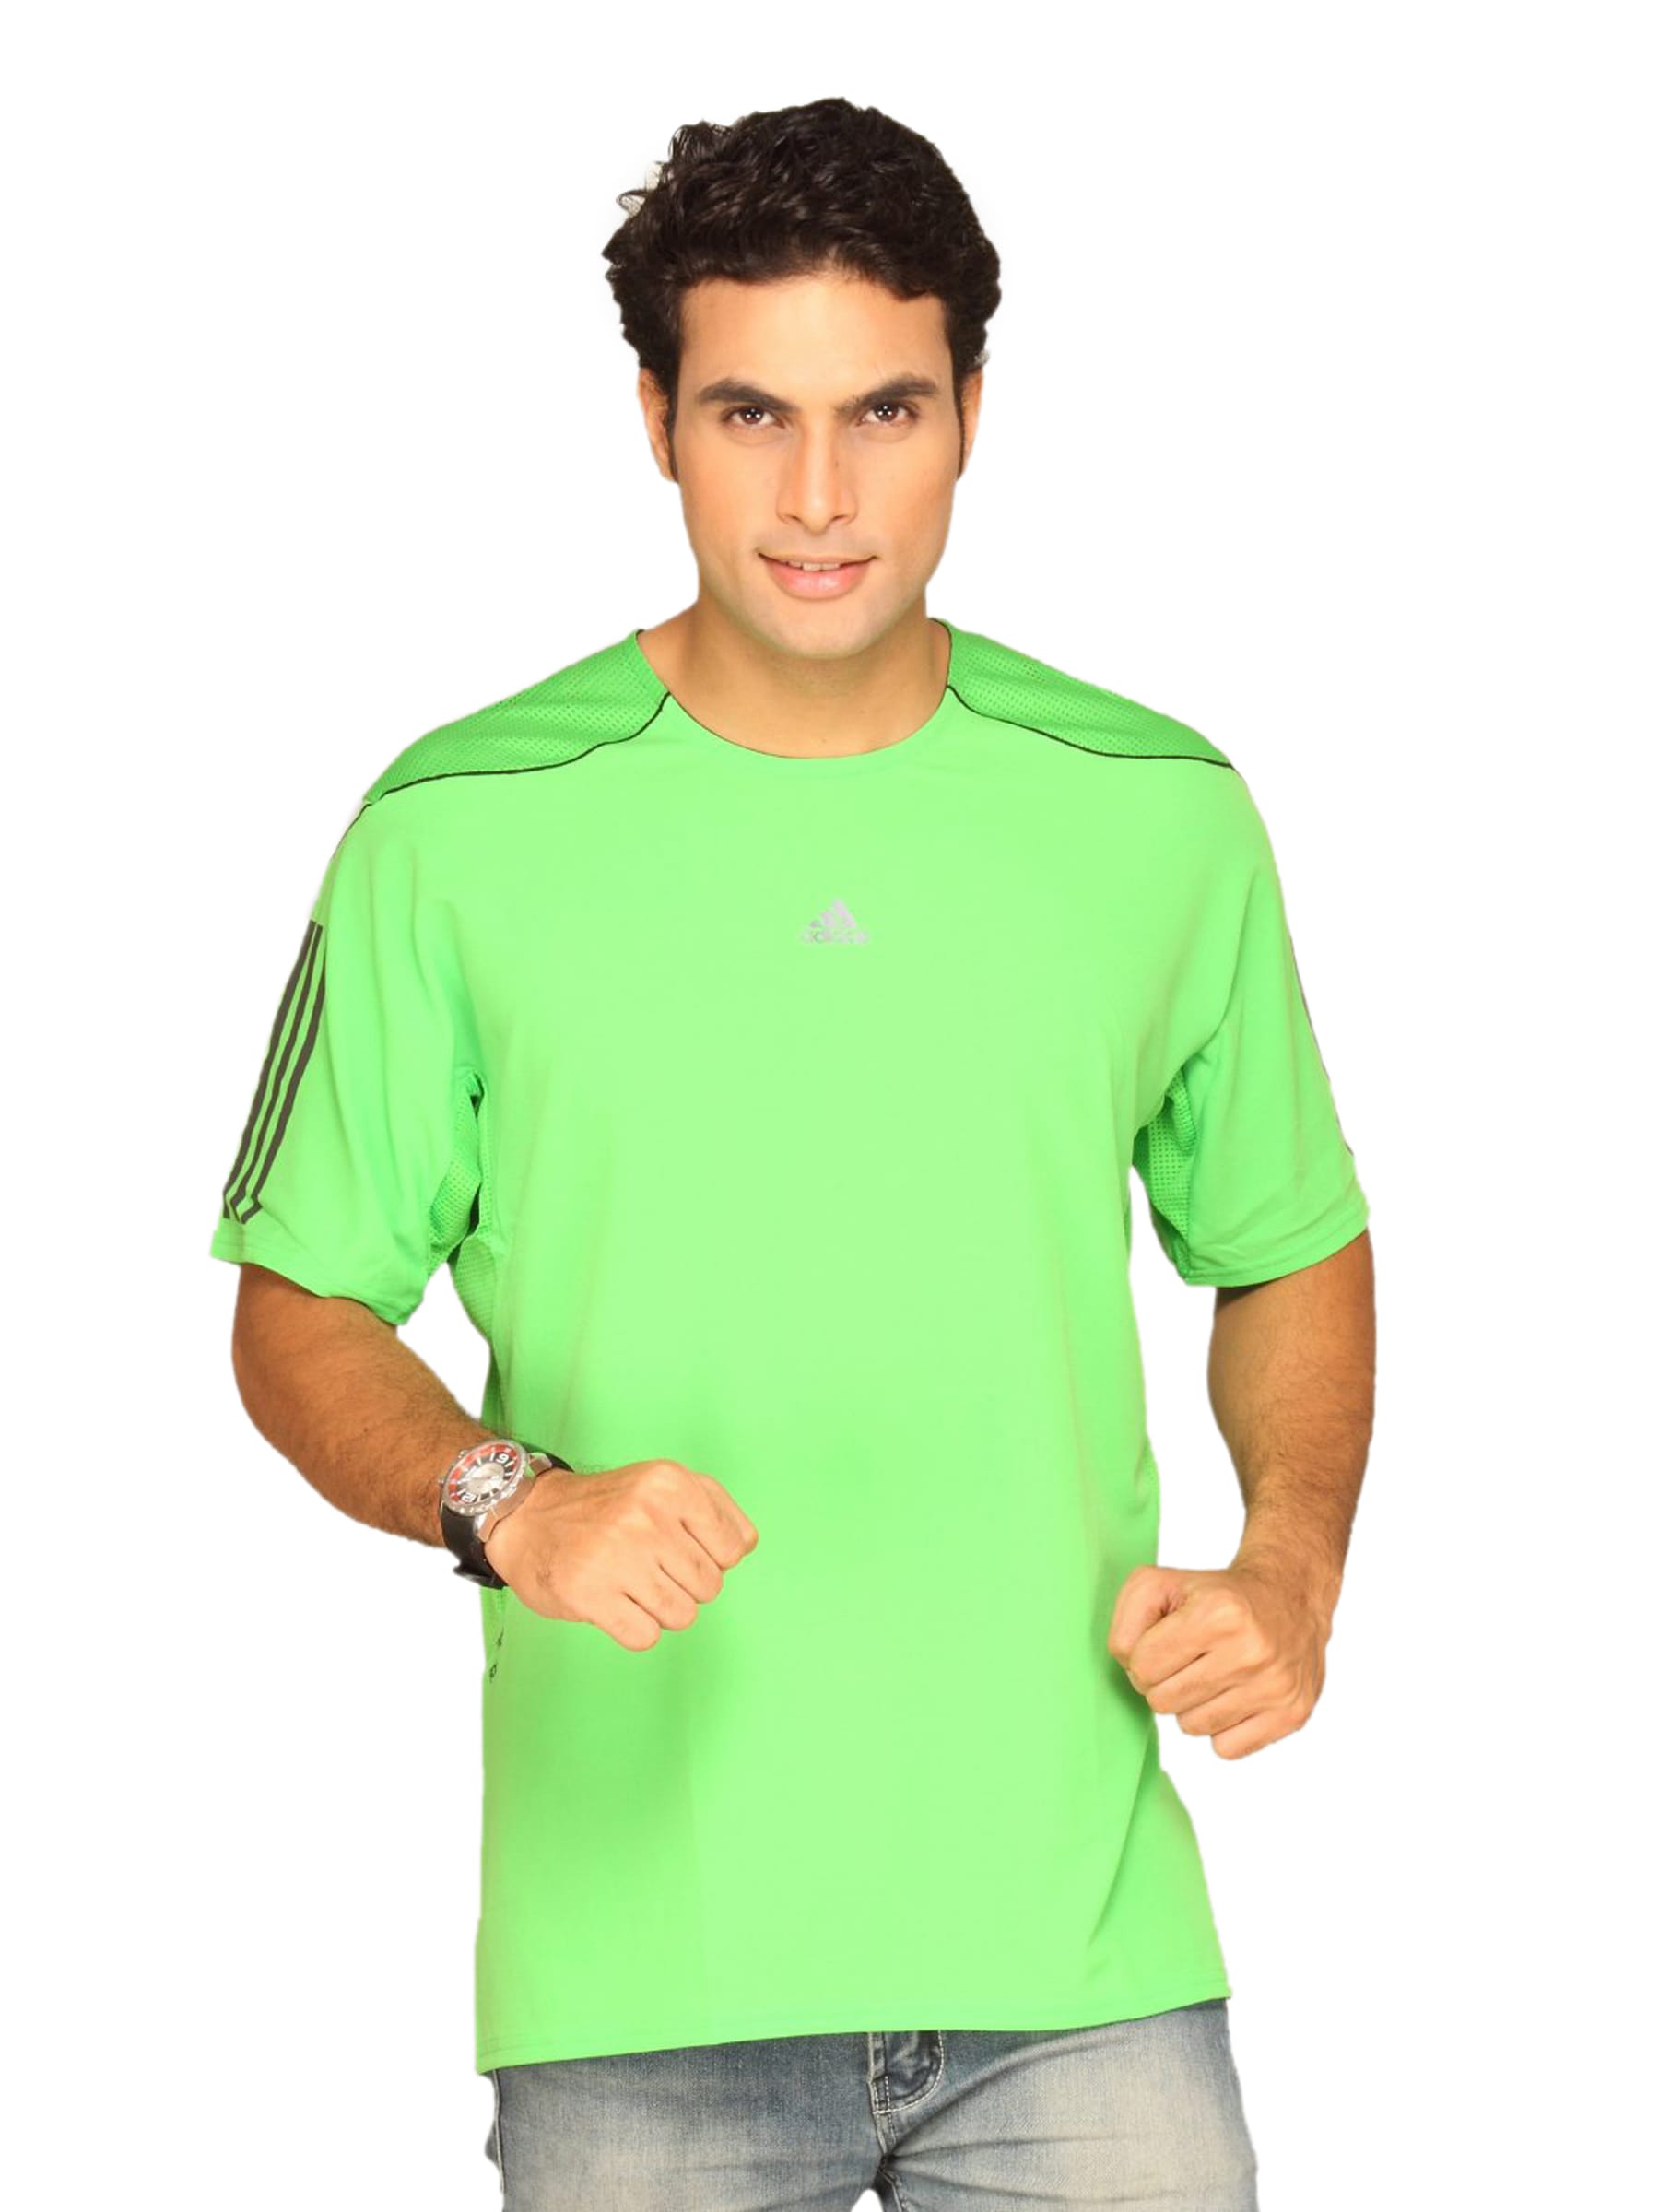 ADIDAS Men's Light Green T-shirt